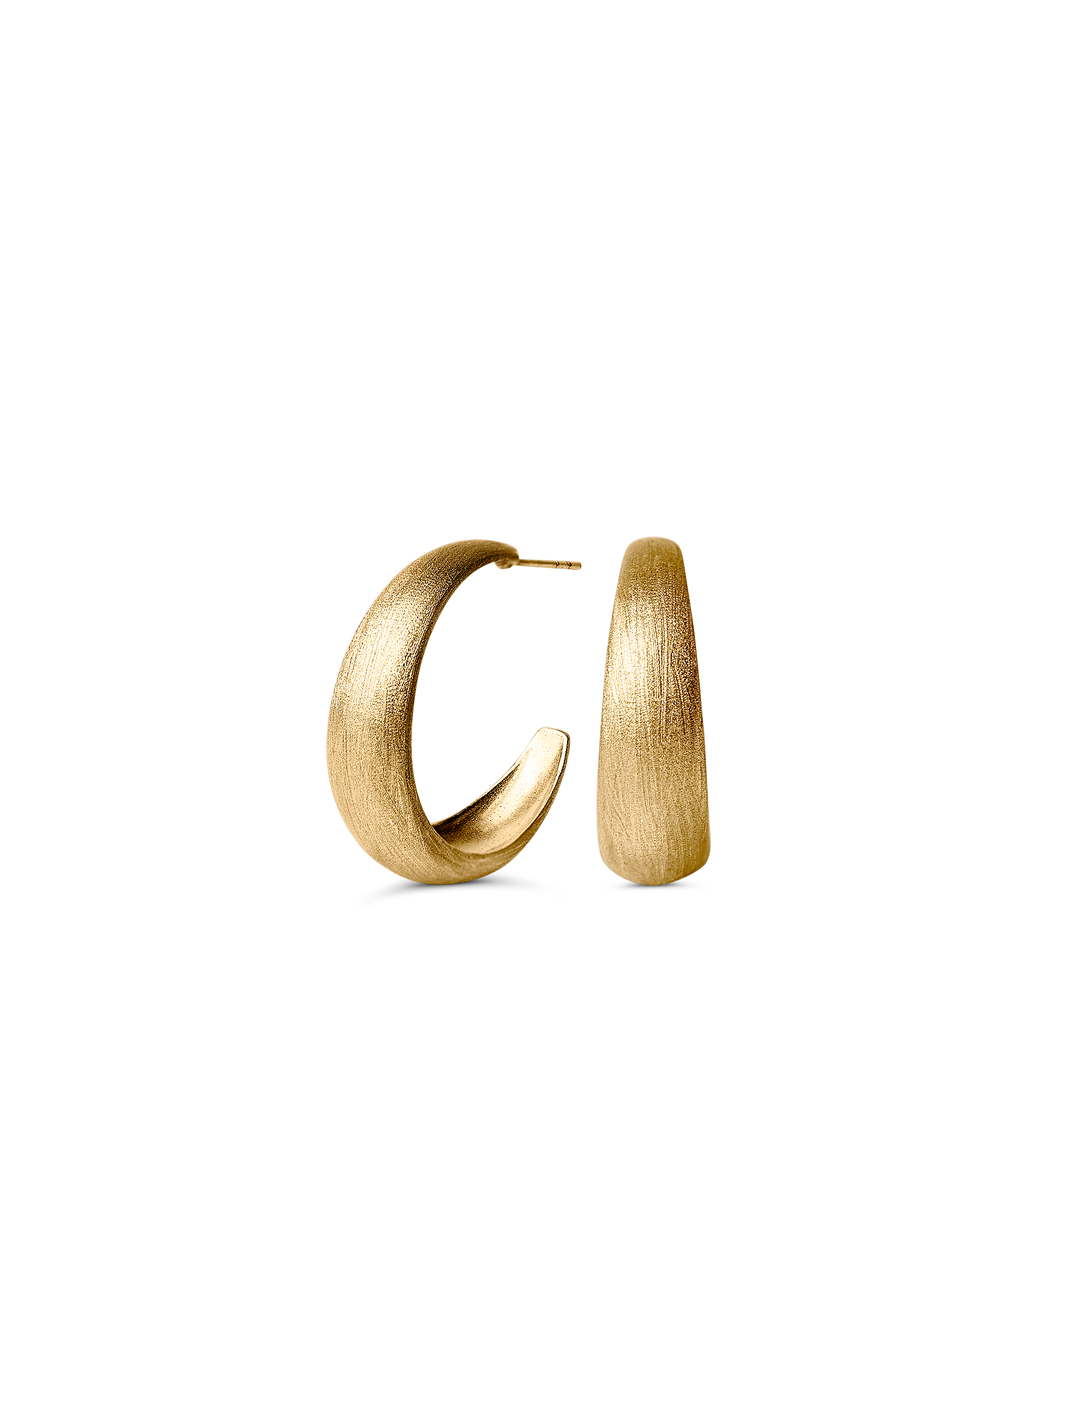 Sage Hoops Earrings by Felicia Wedin 18k gold plated brass 